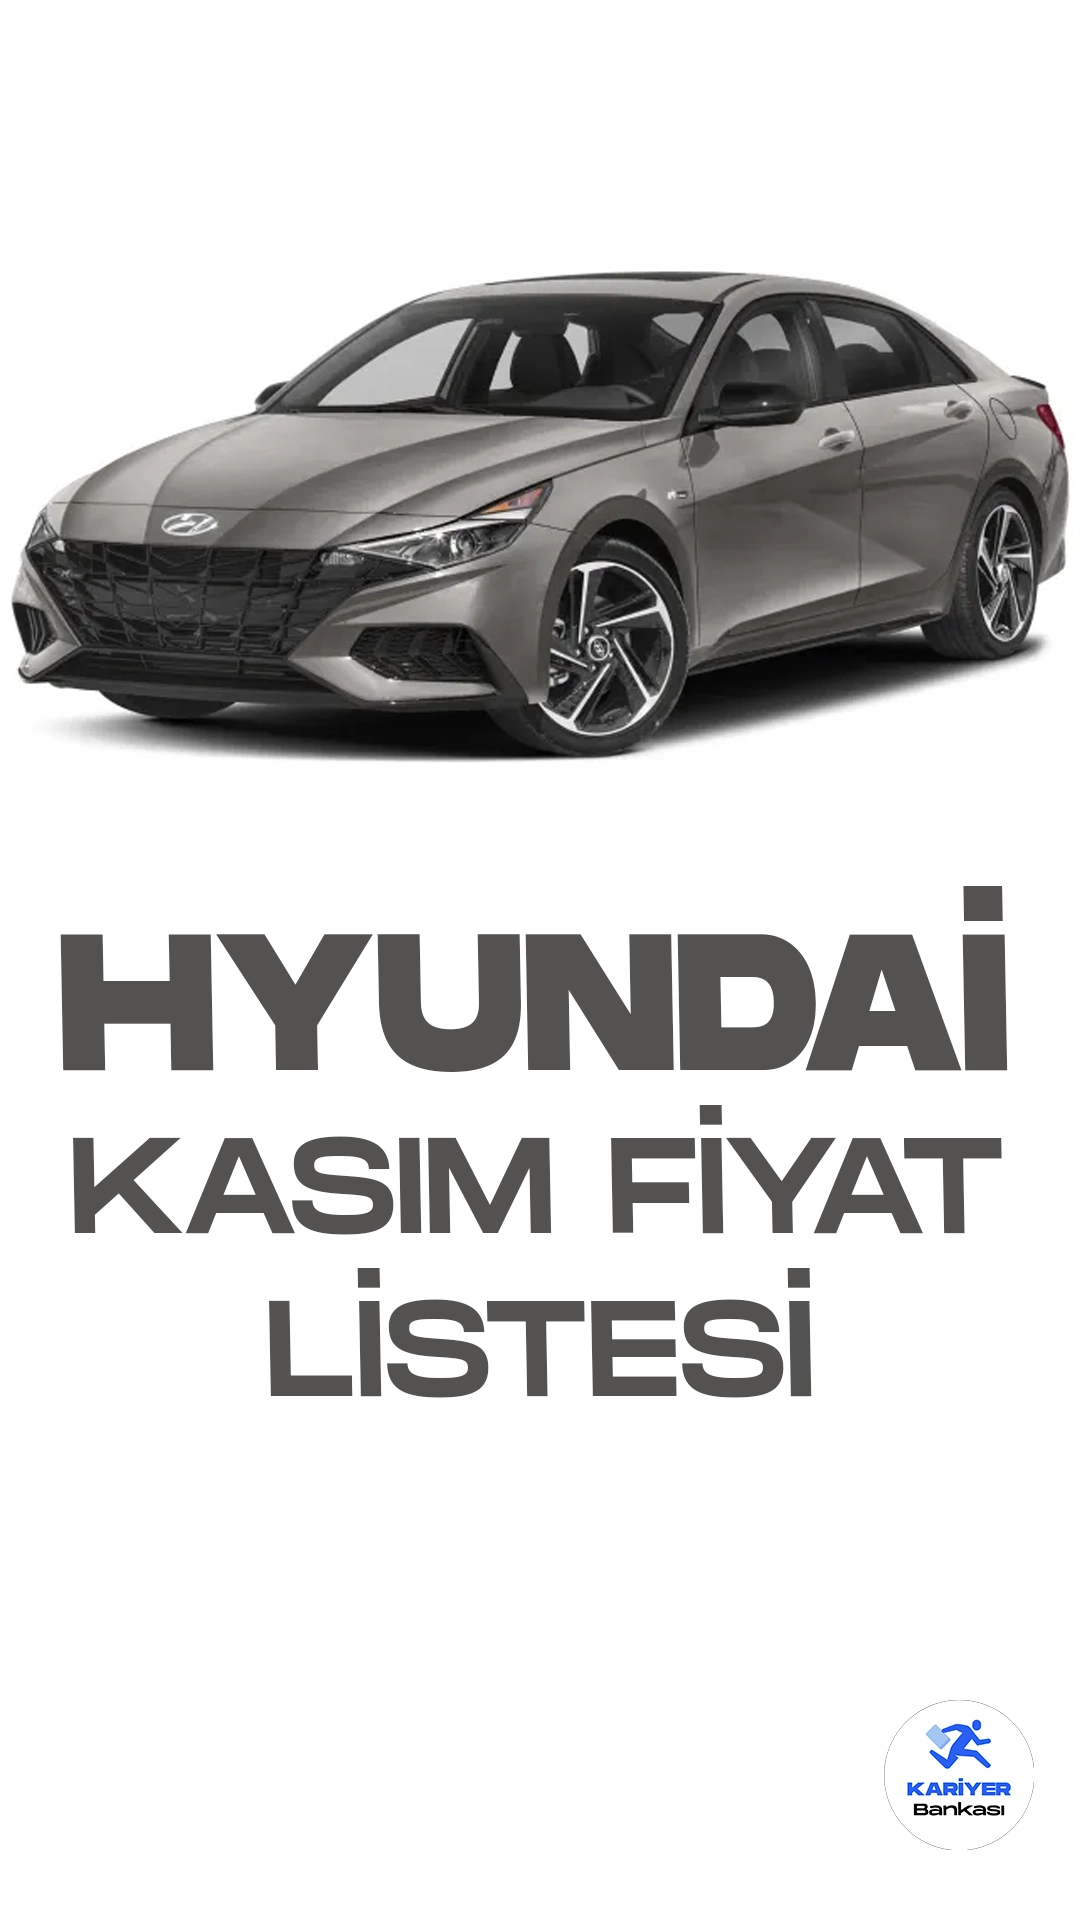 Hyundai Kasım 2023 Fiyat Listesi Yayımlandı.Hyundai, geniş ve çeşitli model yelpazesiyle otomobil tutkunlarını cezbetmeye devam ediyor. Her ay genel olarak fiyat listesini güncelleyen Hyundai markası, Kasım ayı fiyat listesini paylaştı.